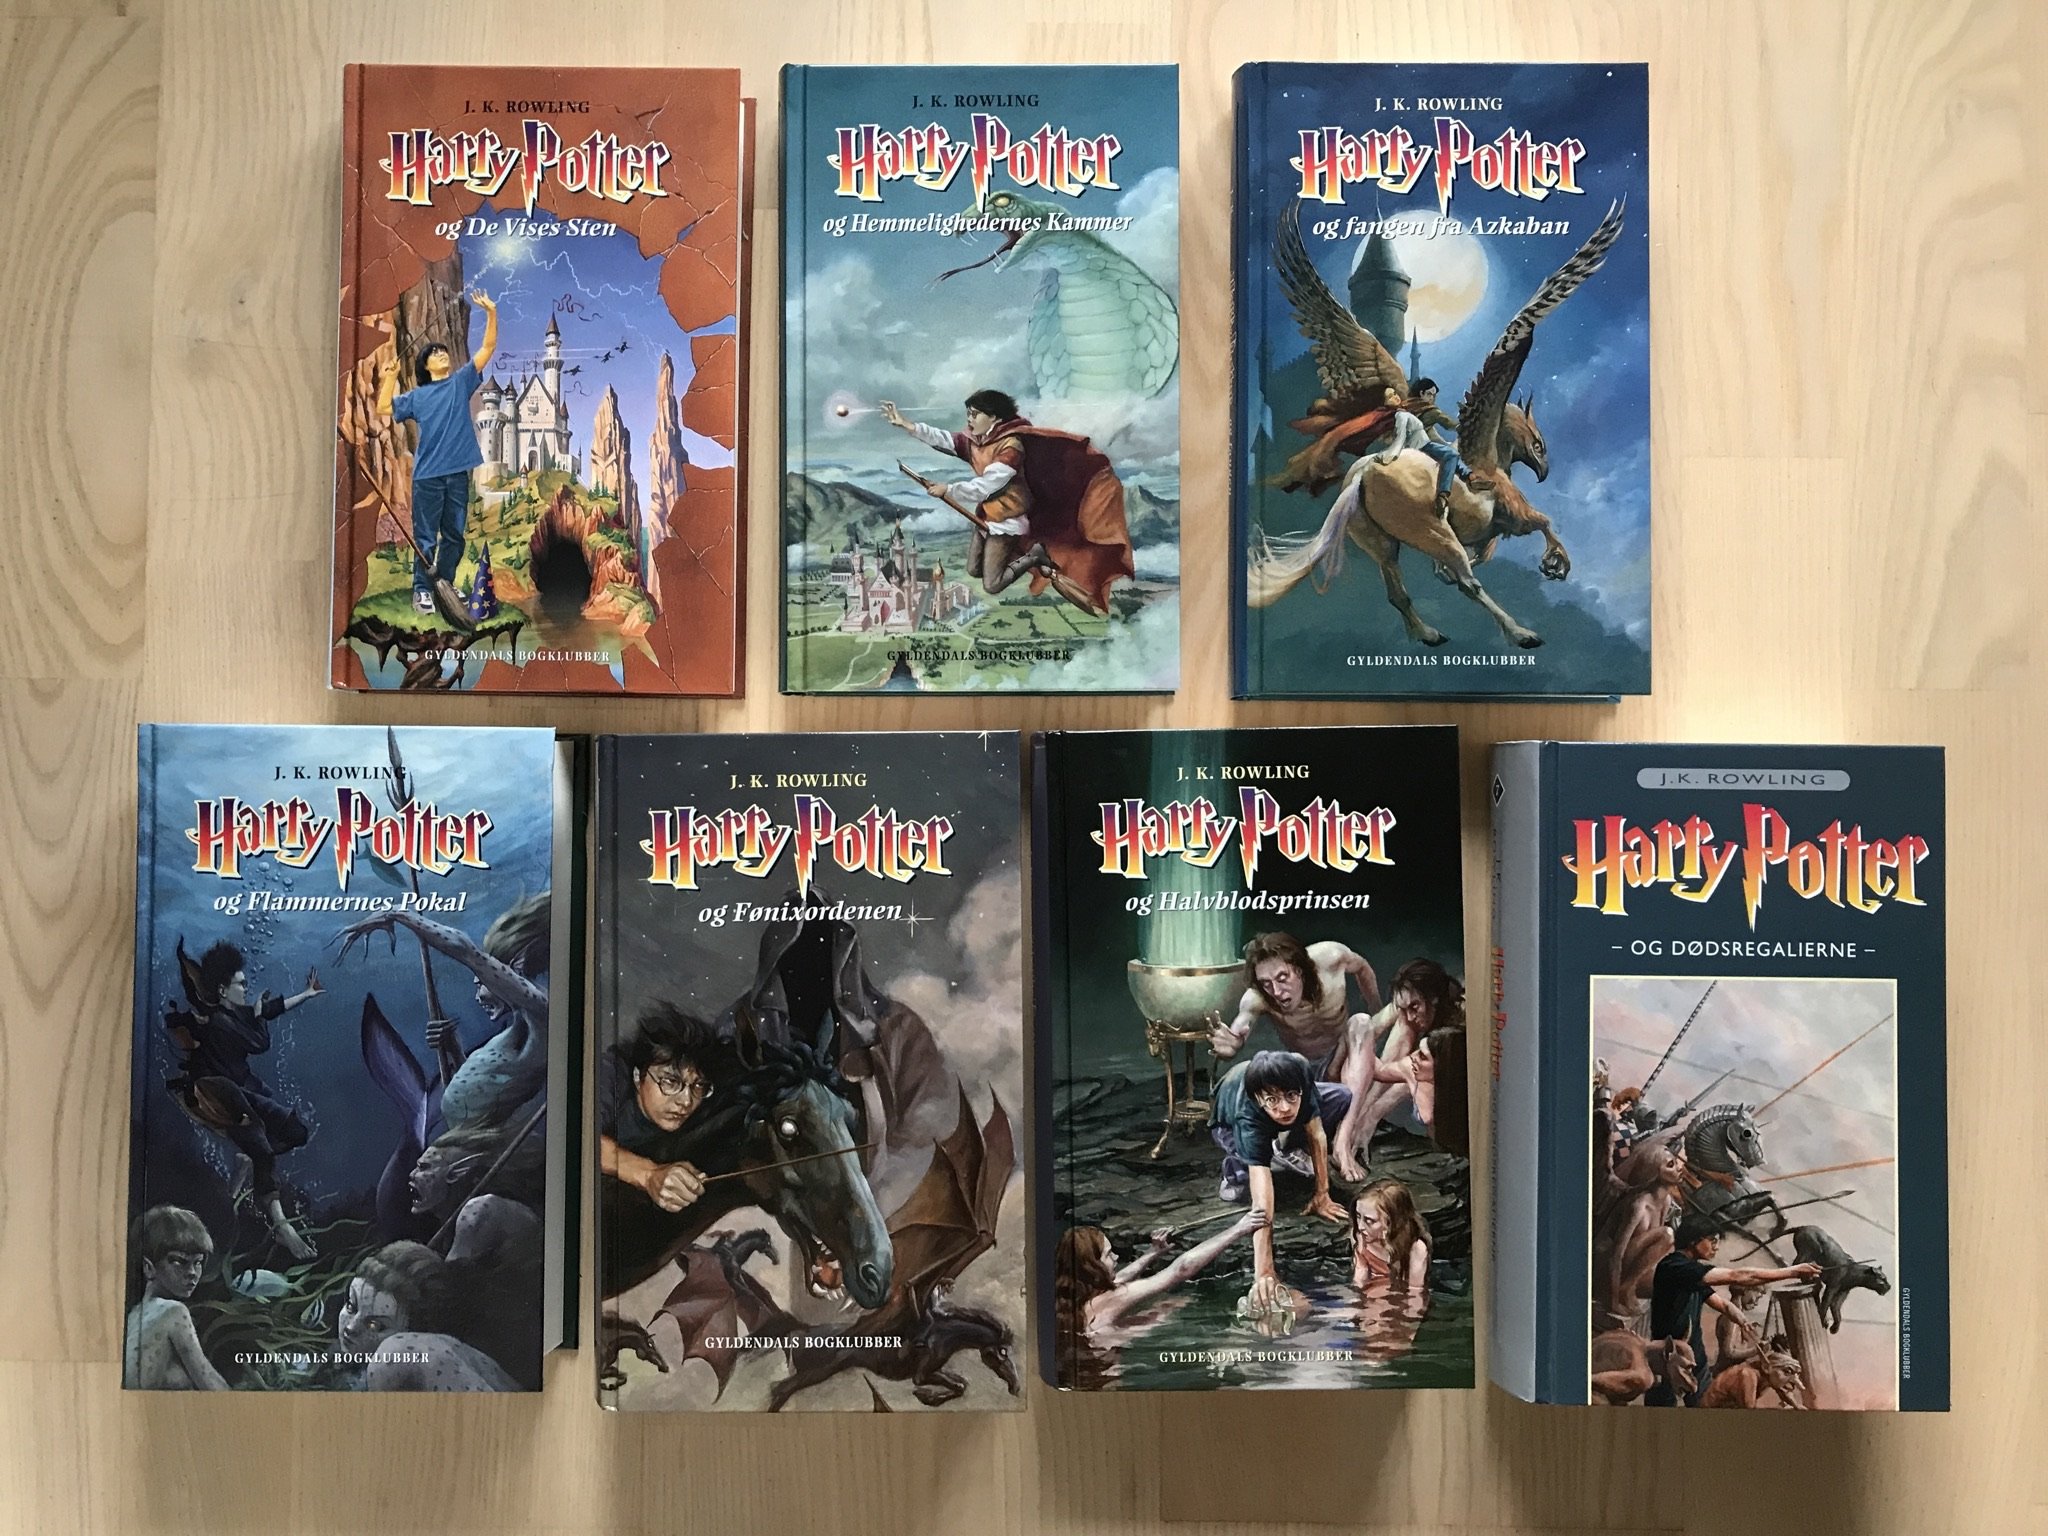 Harry Potter bøger, 125 kr.